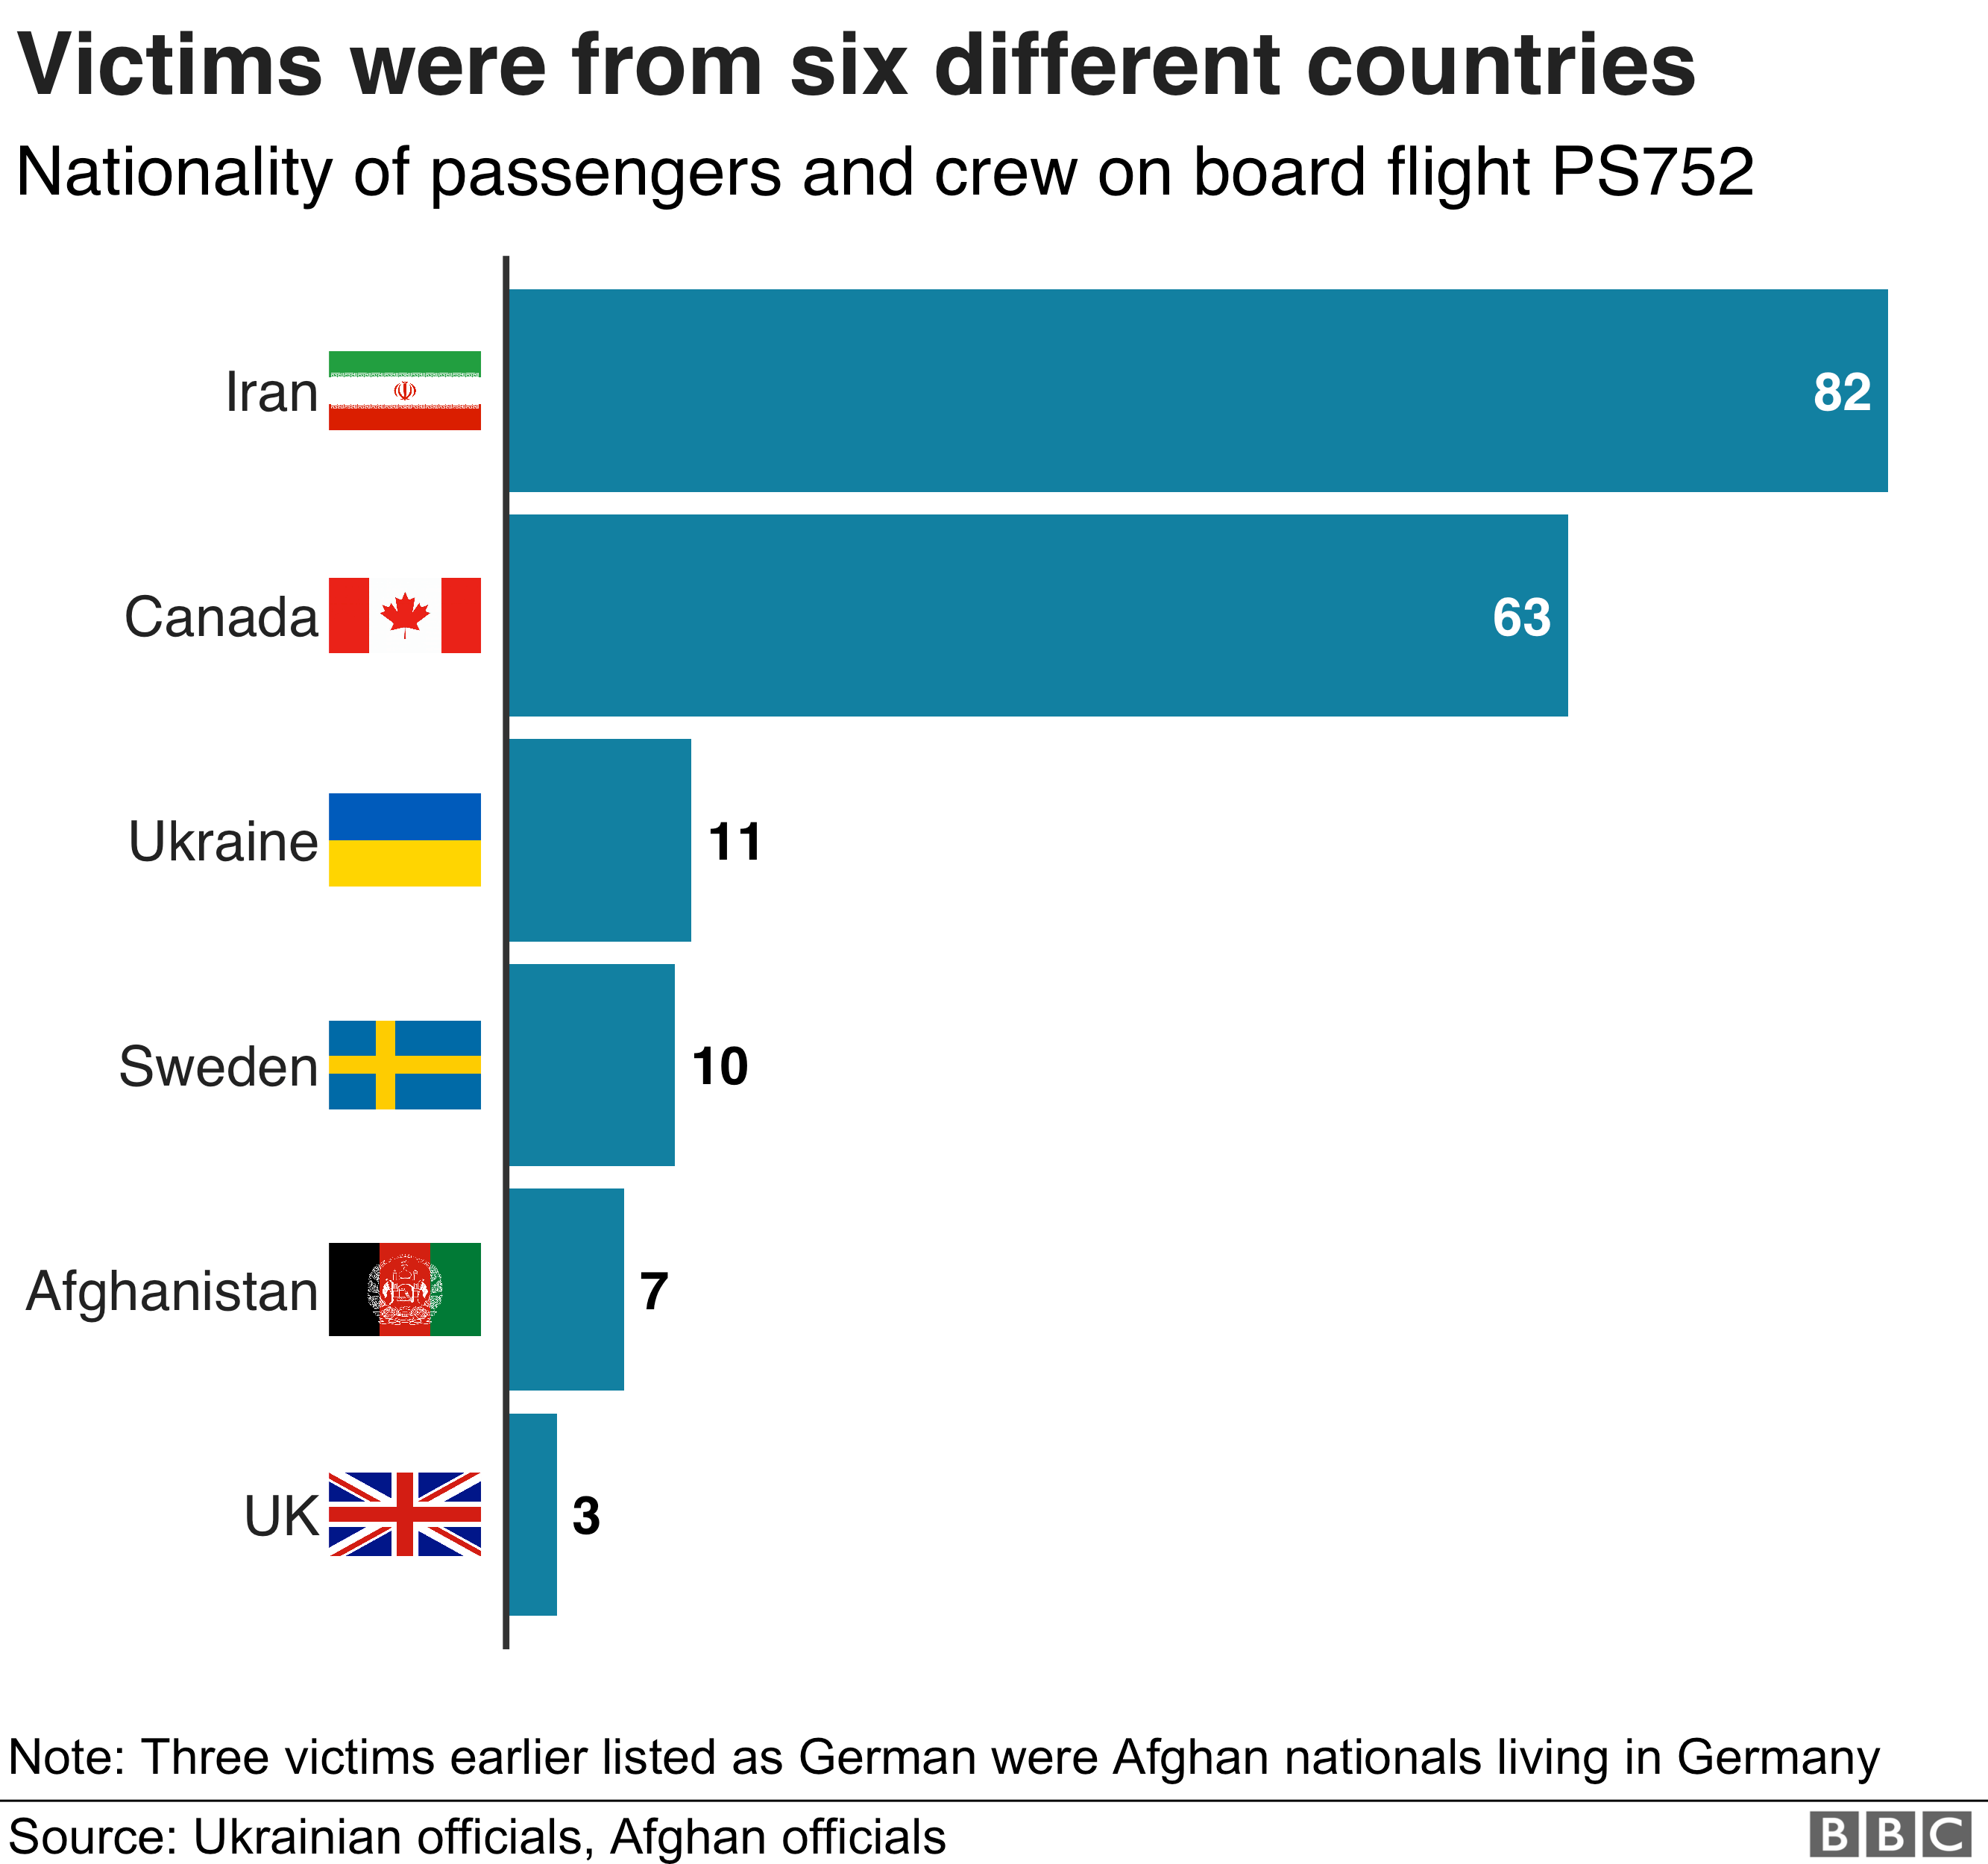 На графике показаны шесть стран, из которых прибыли жертвы - Иран, Канада, Украина, Швеция, Афганистан и Великобритания